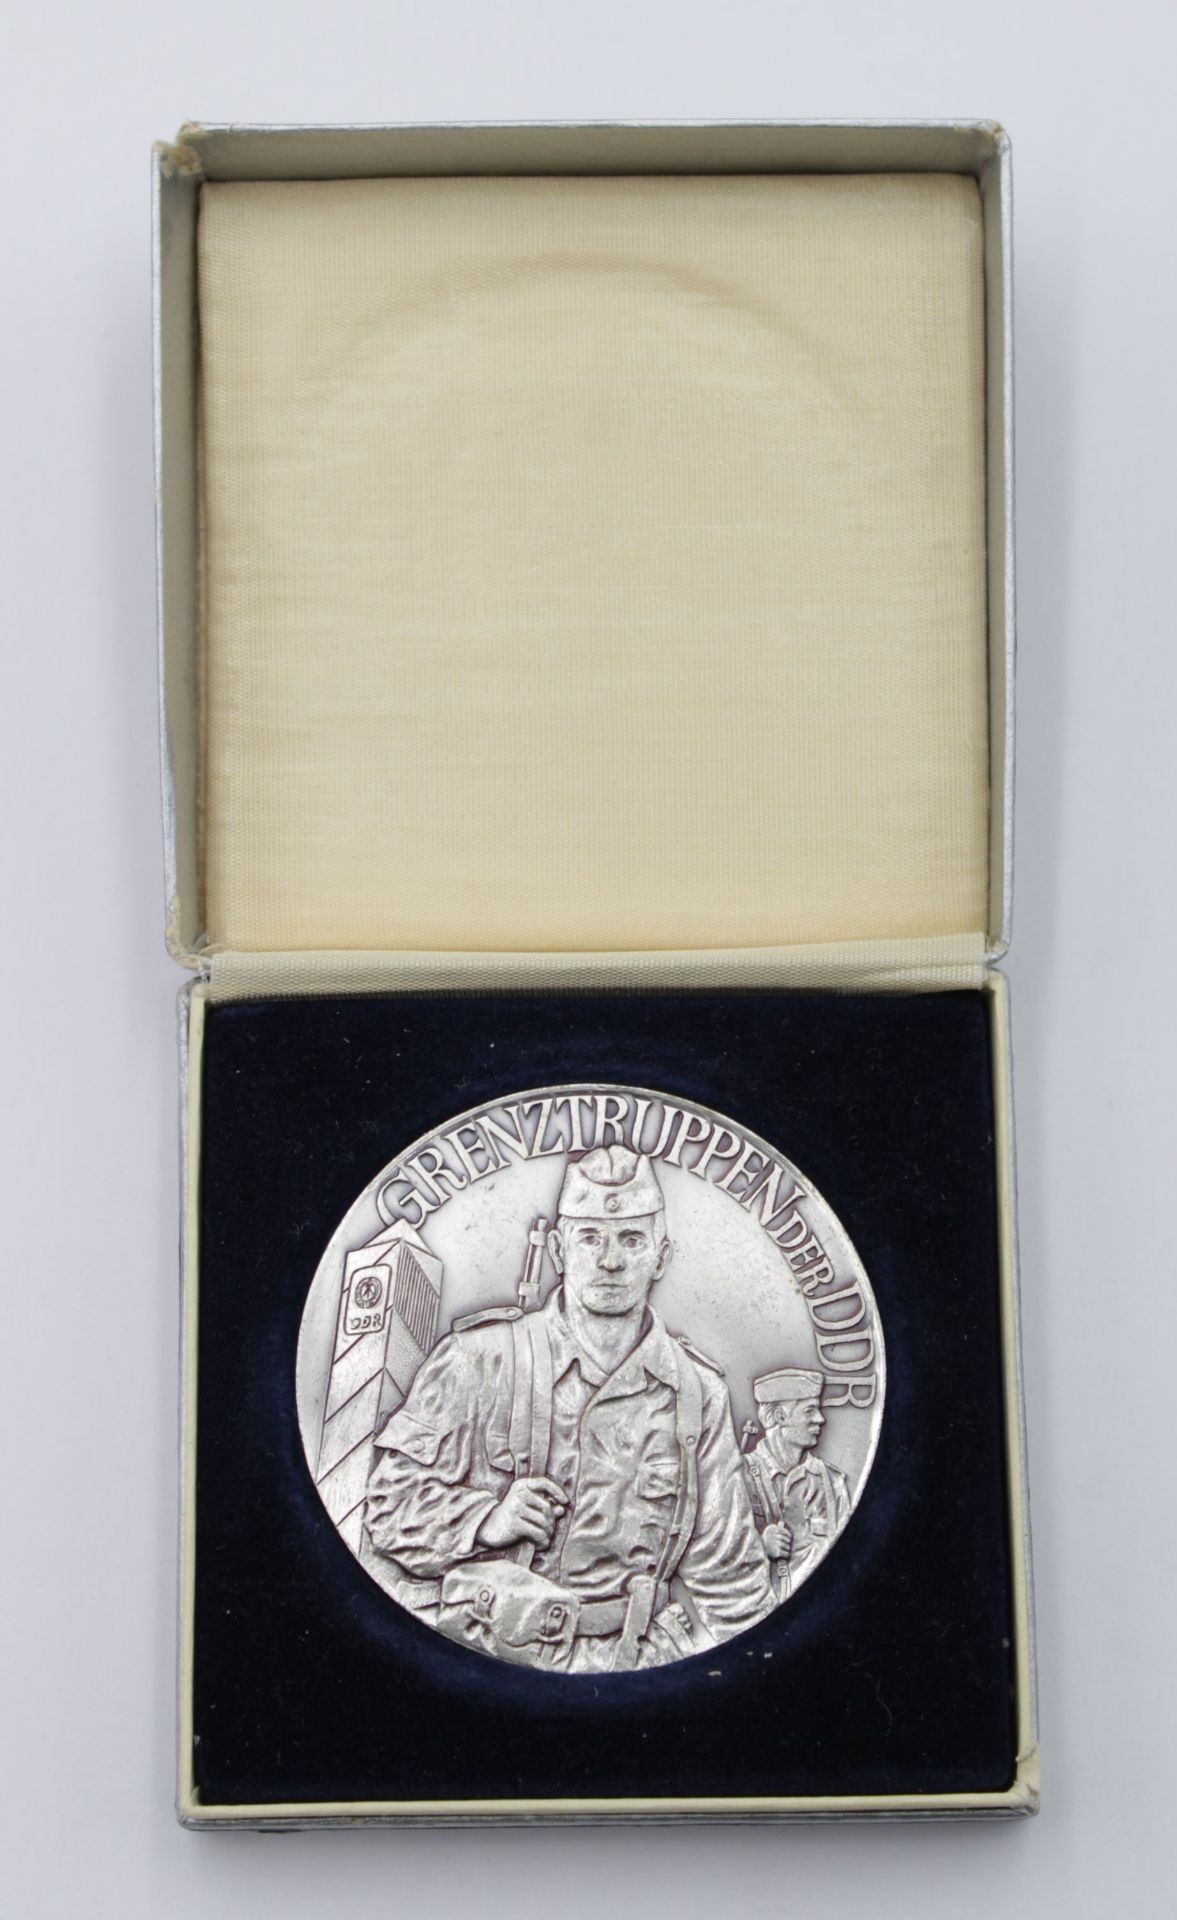 Medaille, Grenztruppen der DDR, versilbert, orig. Etui, D-6cm.